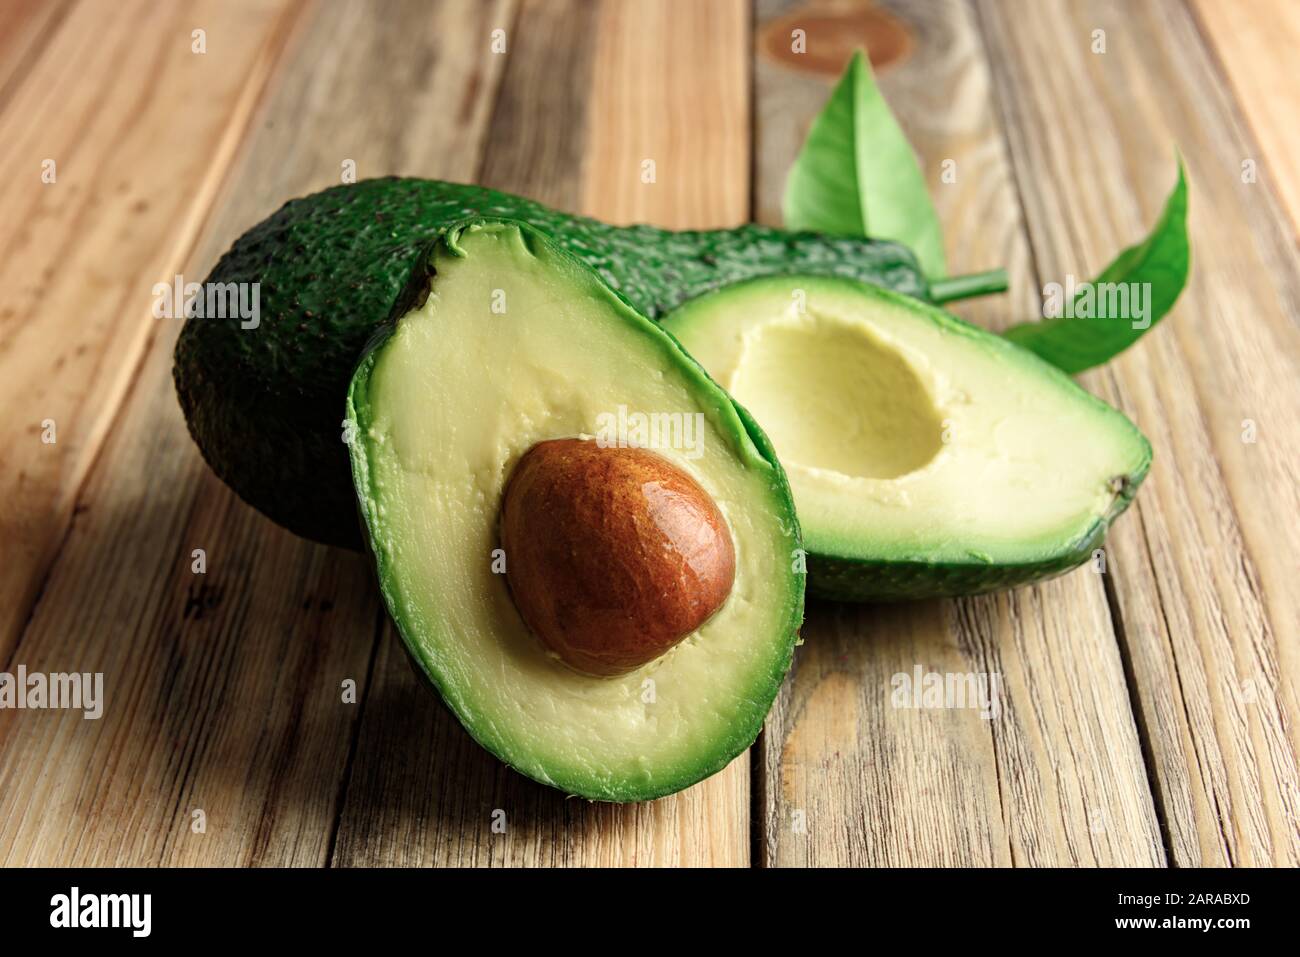 Fresco frutto di avocado su una tavola di legno. Il concetto di mangiare sano. Fotografia di cibo Foto Stock